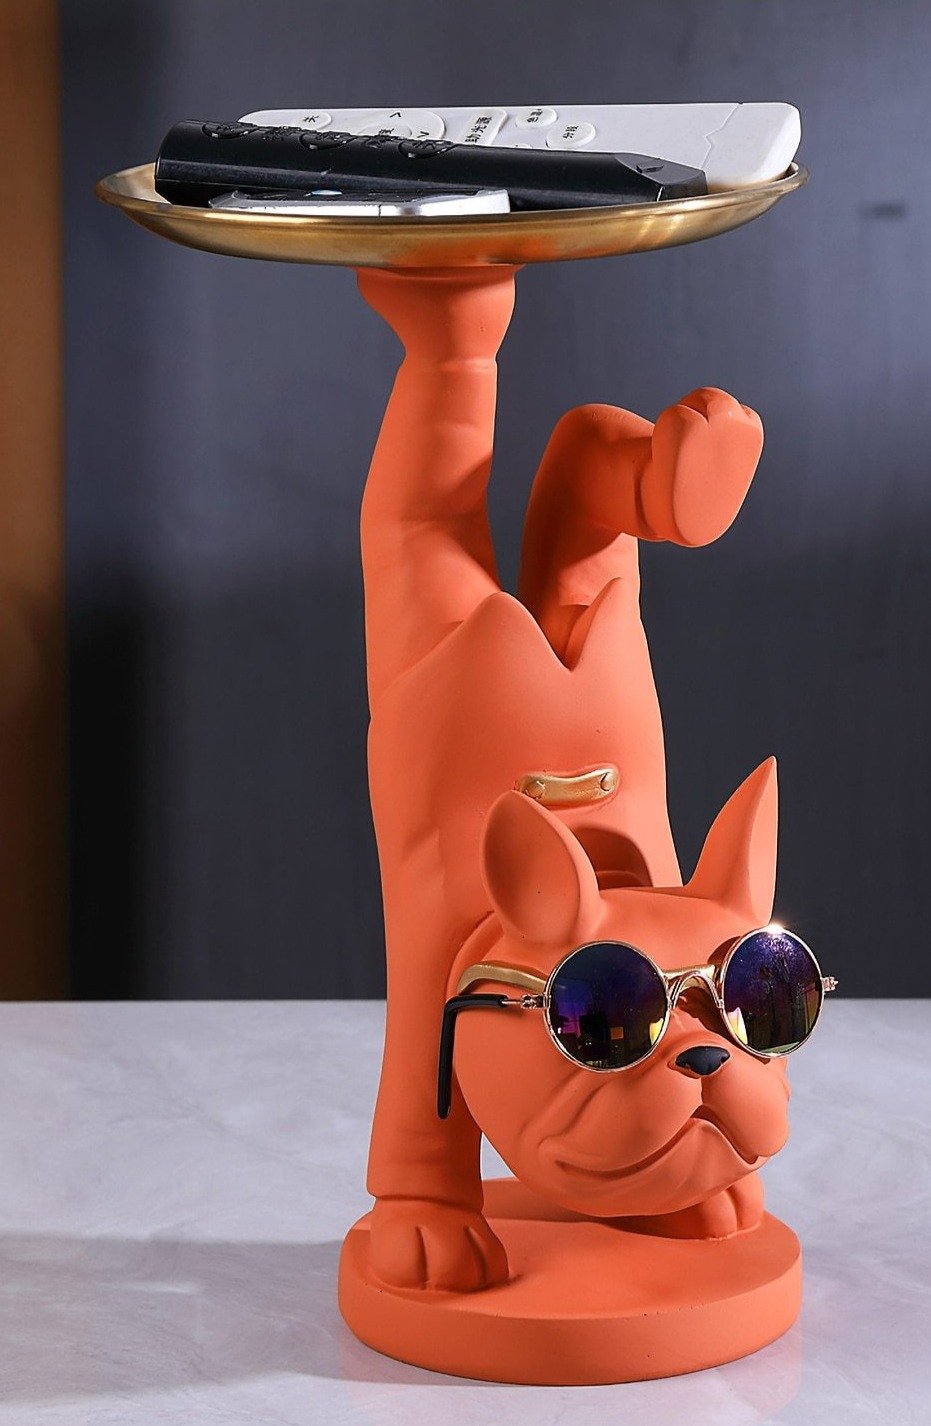 Bandeja Cool Dog con postura de una pierna